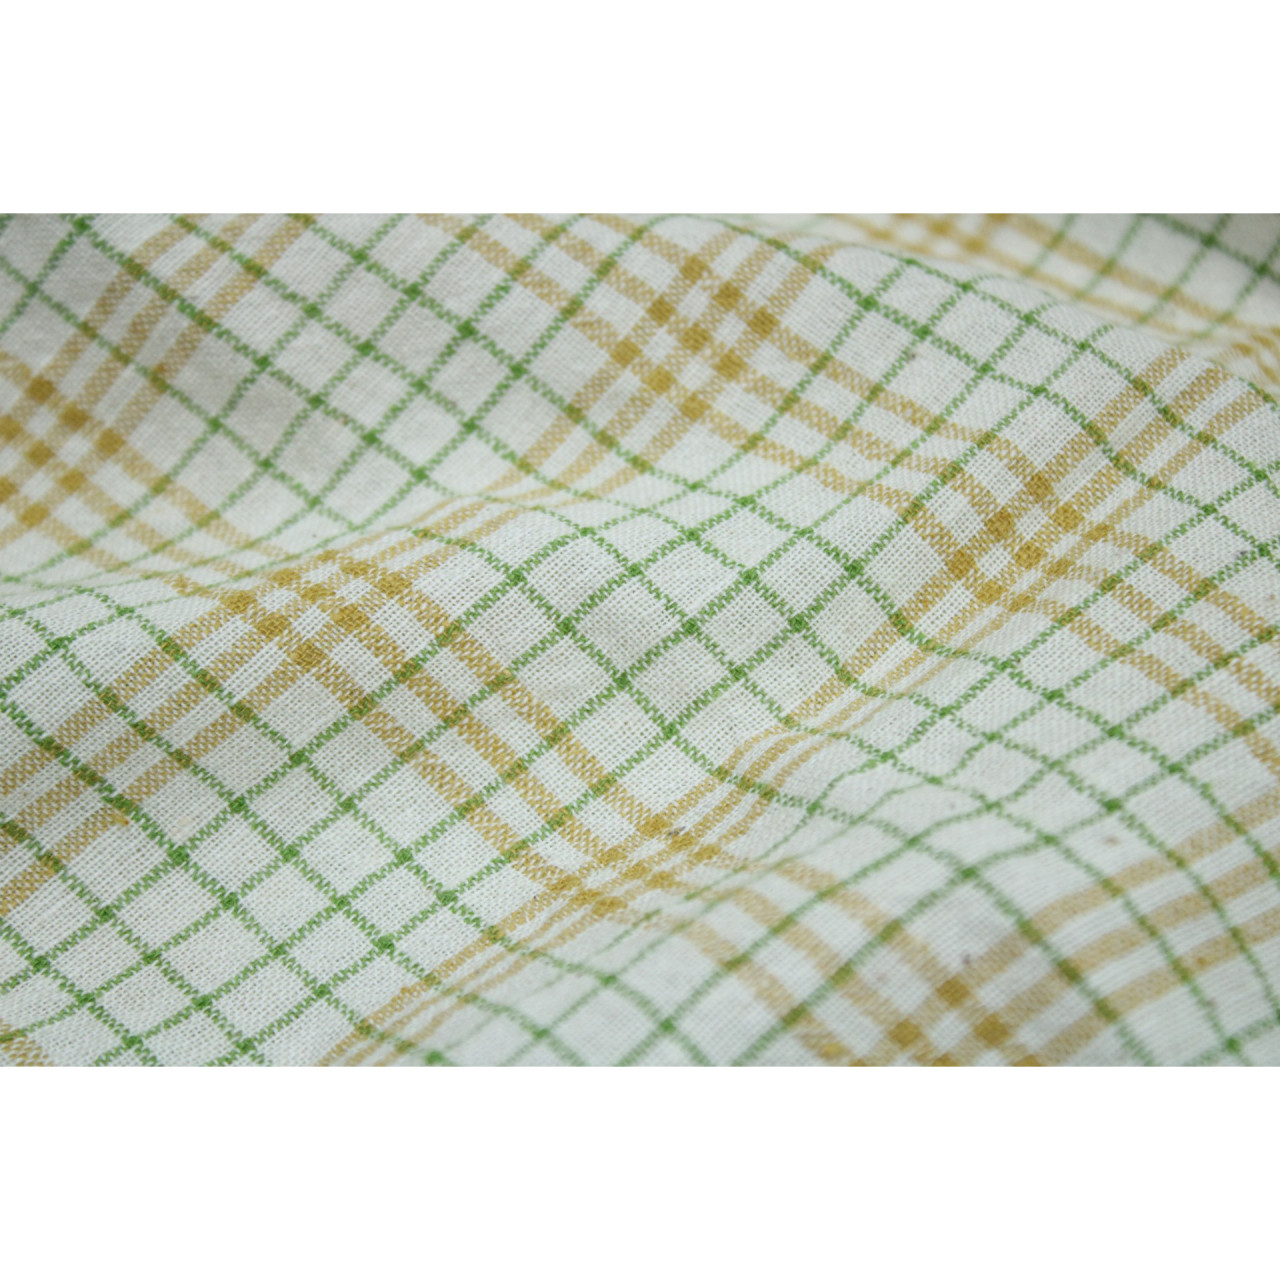 (2123) Kala cotton Azo-free dyed Kutchy yardage from Kutch - Yellow, green, white, checks